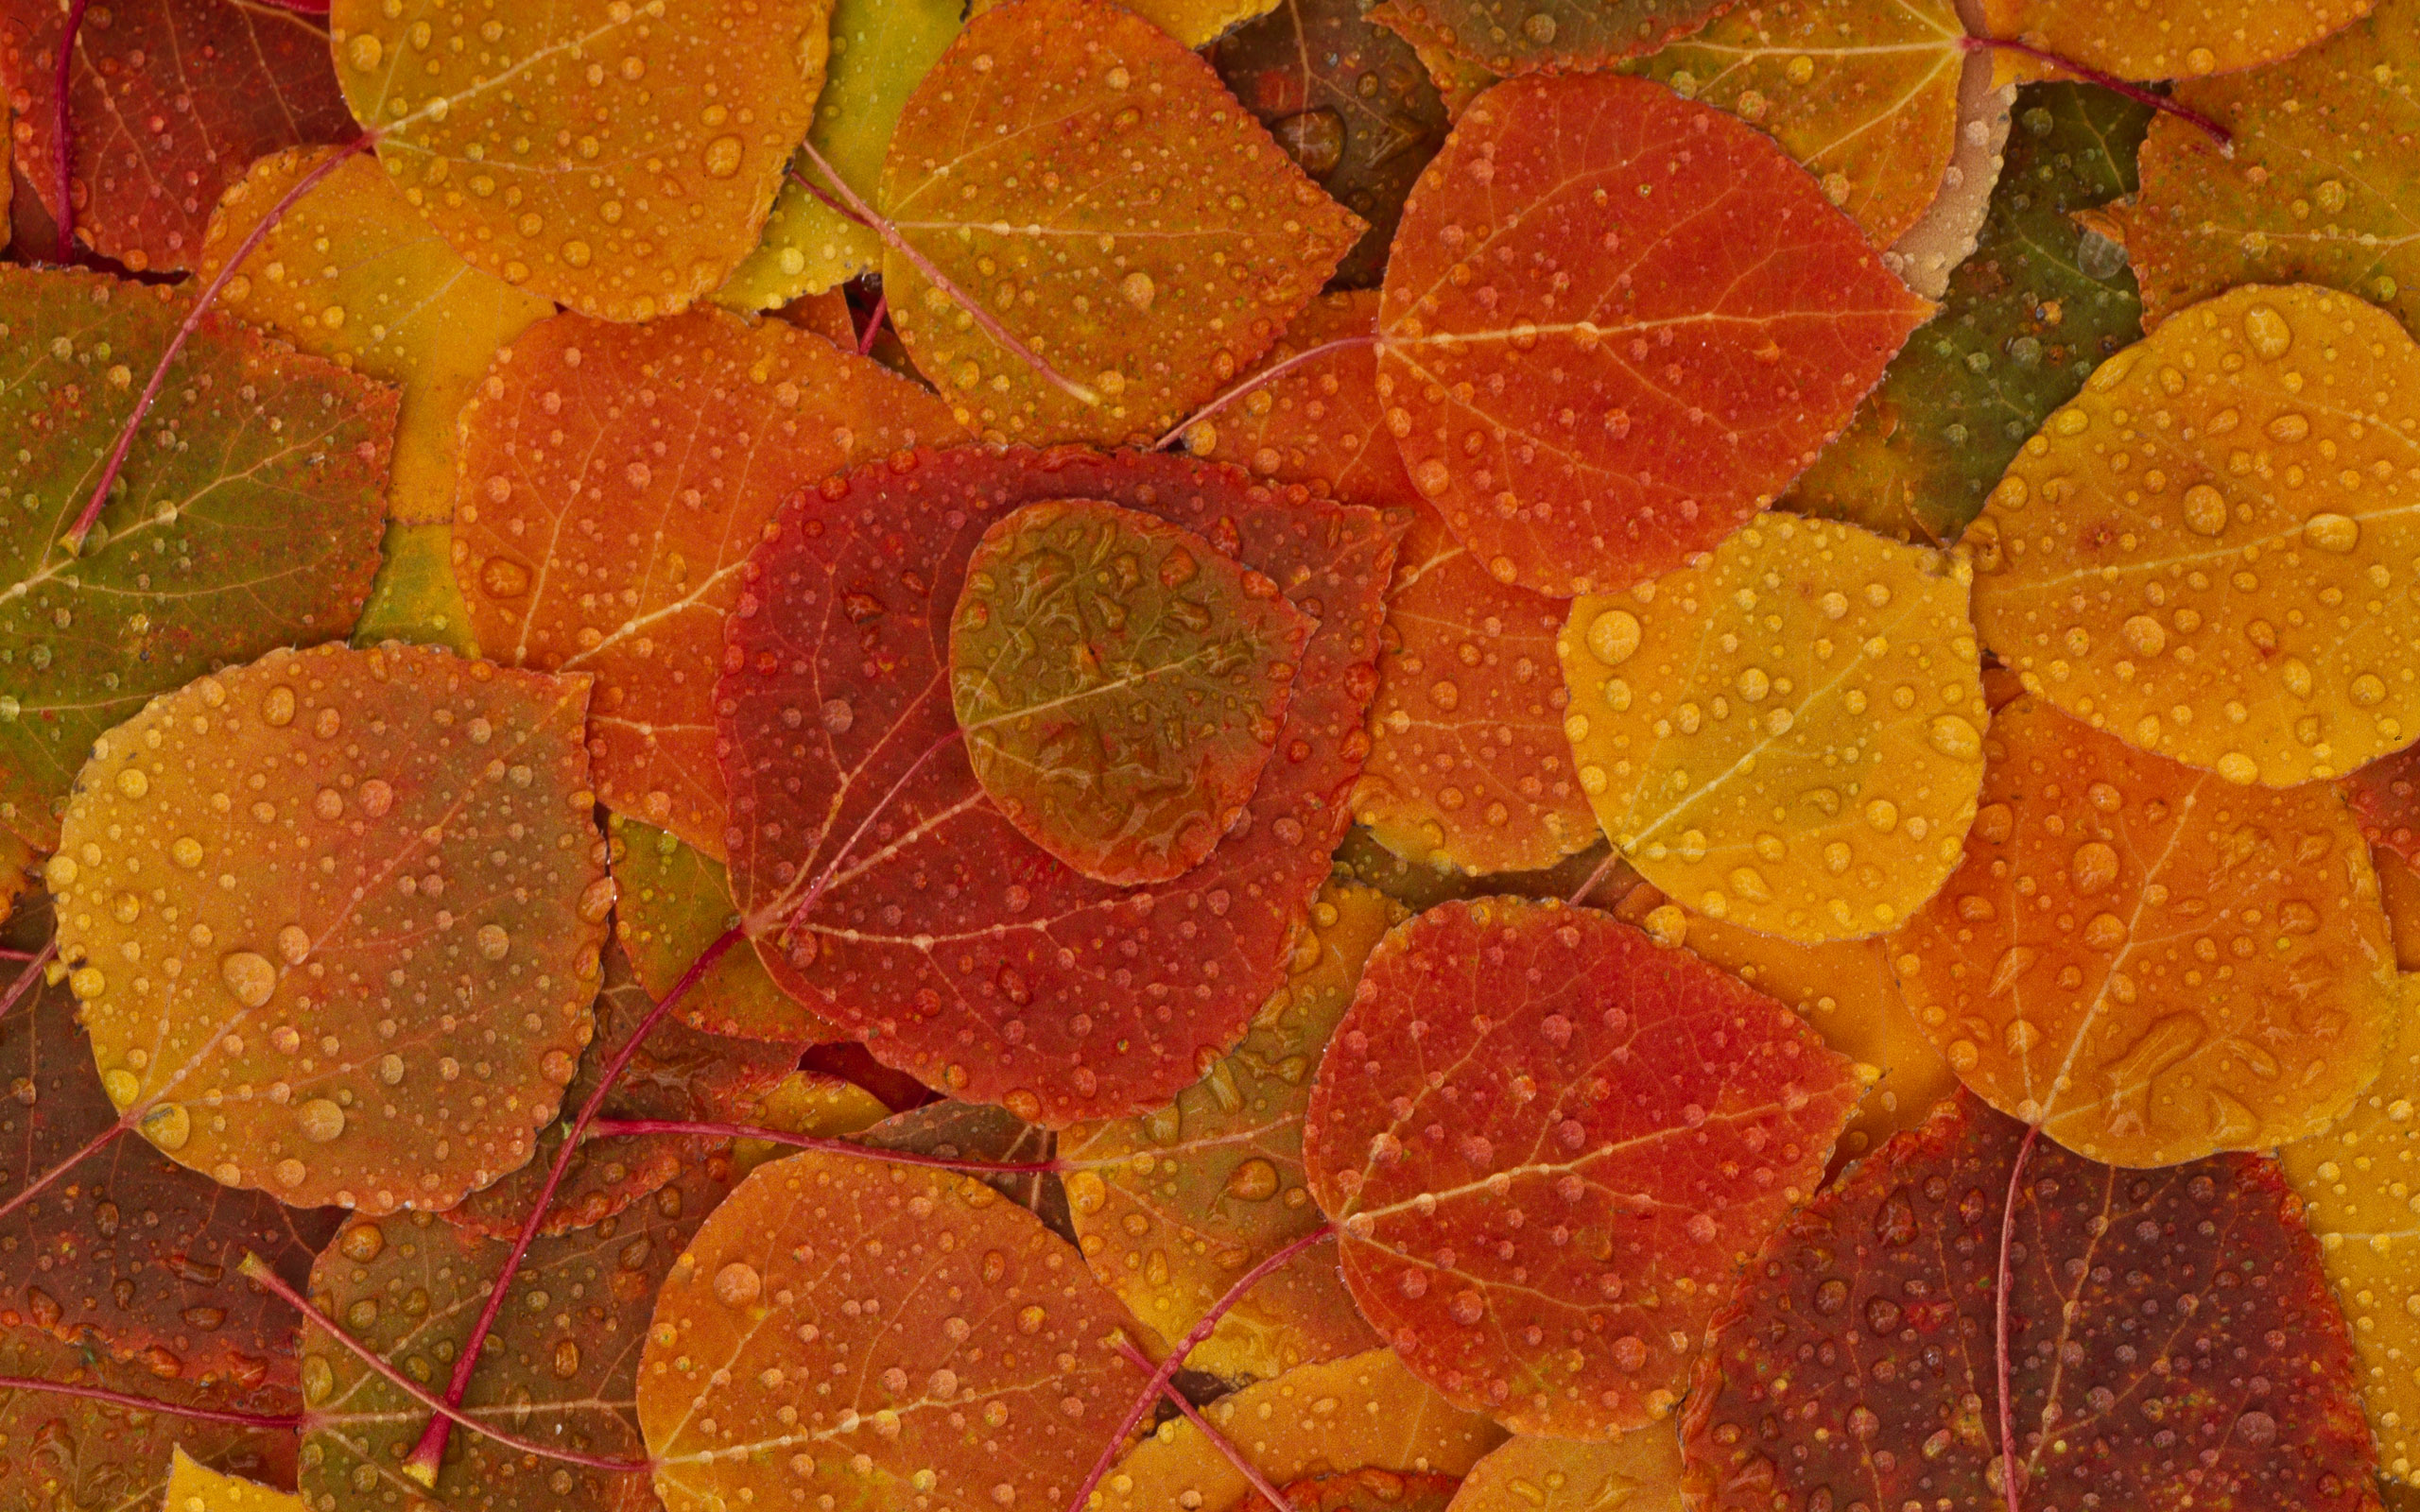 http wallpaperswide com fall foliage wallpapers html filesize